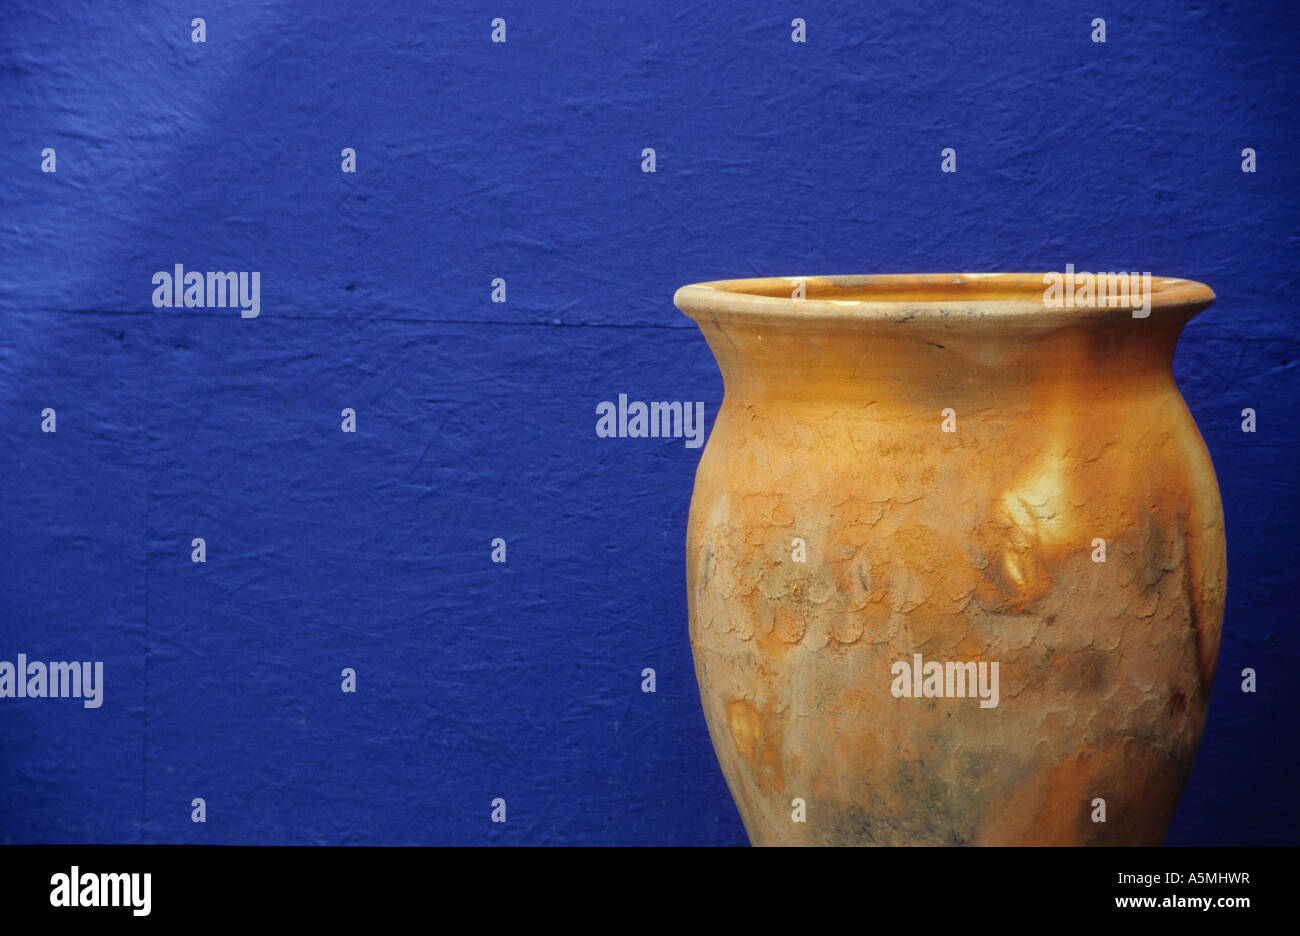 Terracottavase vor einer blauen Wand terracotta vase infront a blue wall Gefäß Gegenstand Ding Sache Objekt Gebilde Thema Sujet Stock Photo